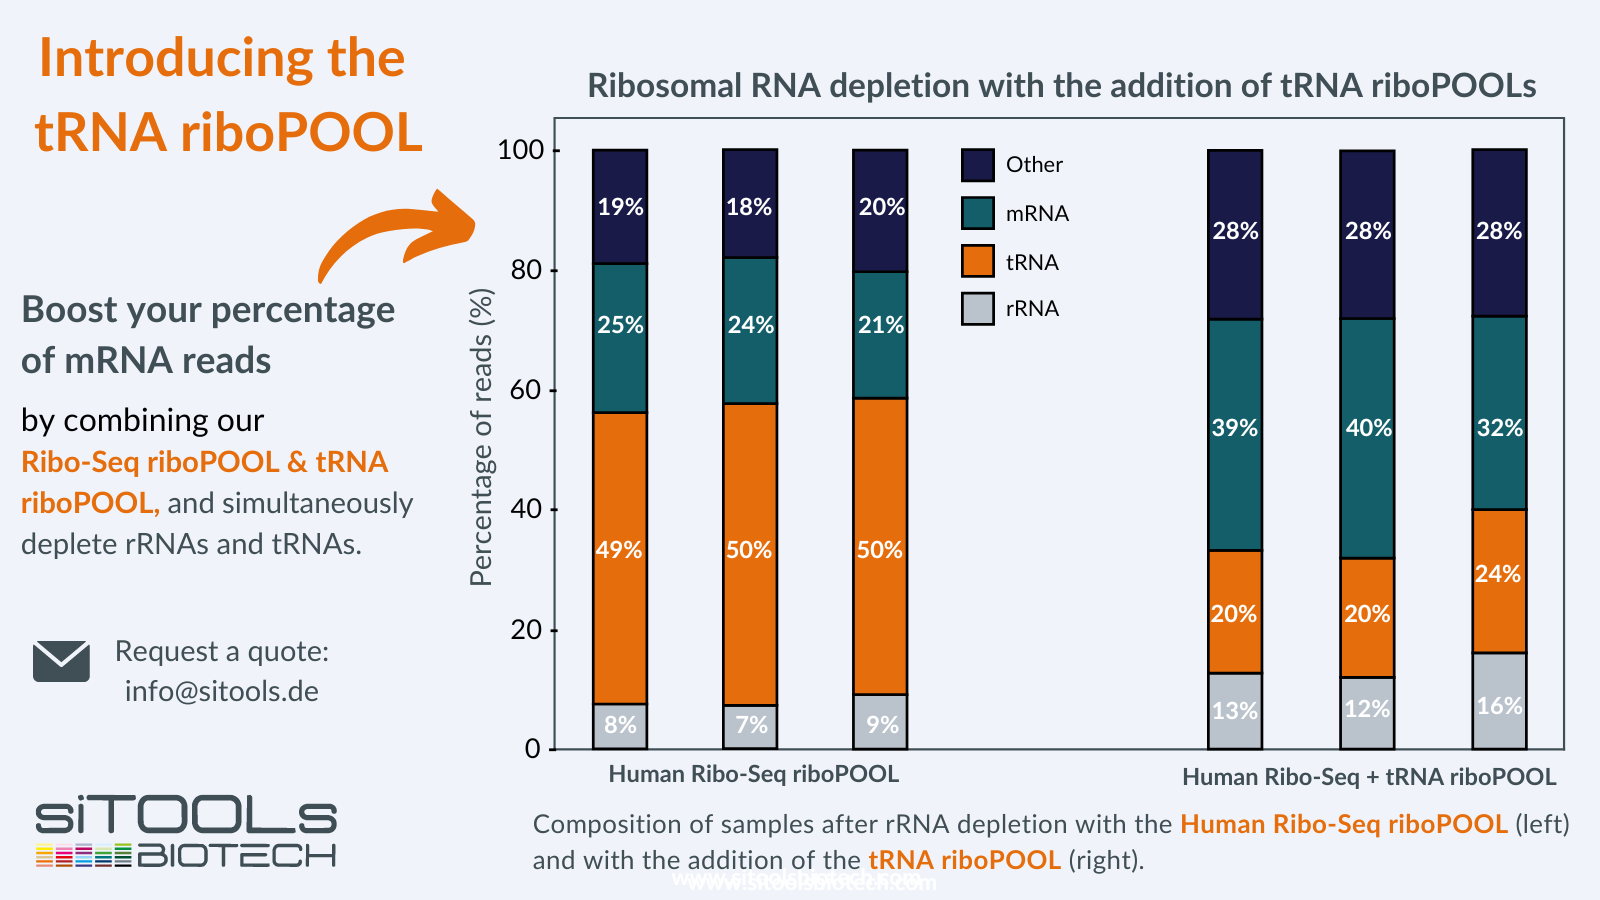 Ribsomal RNA depletion with tRNA riboPools